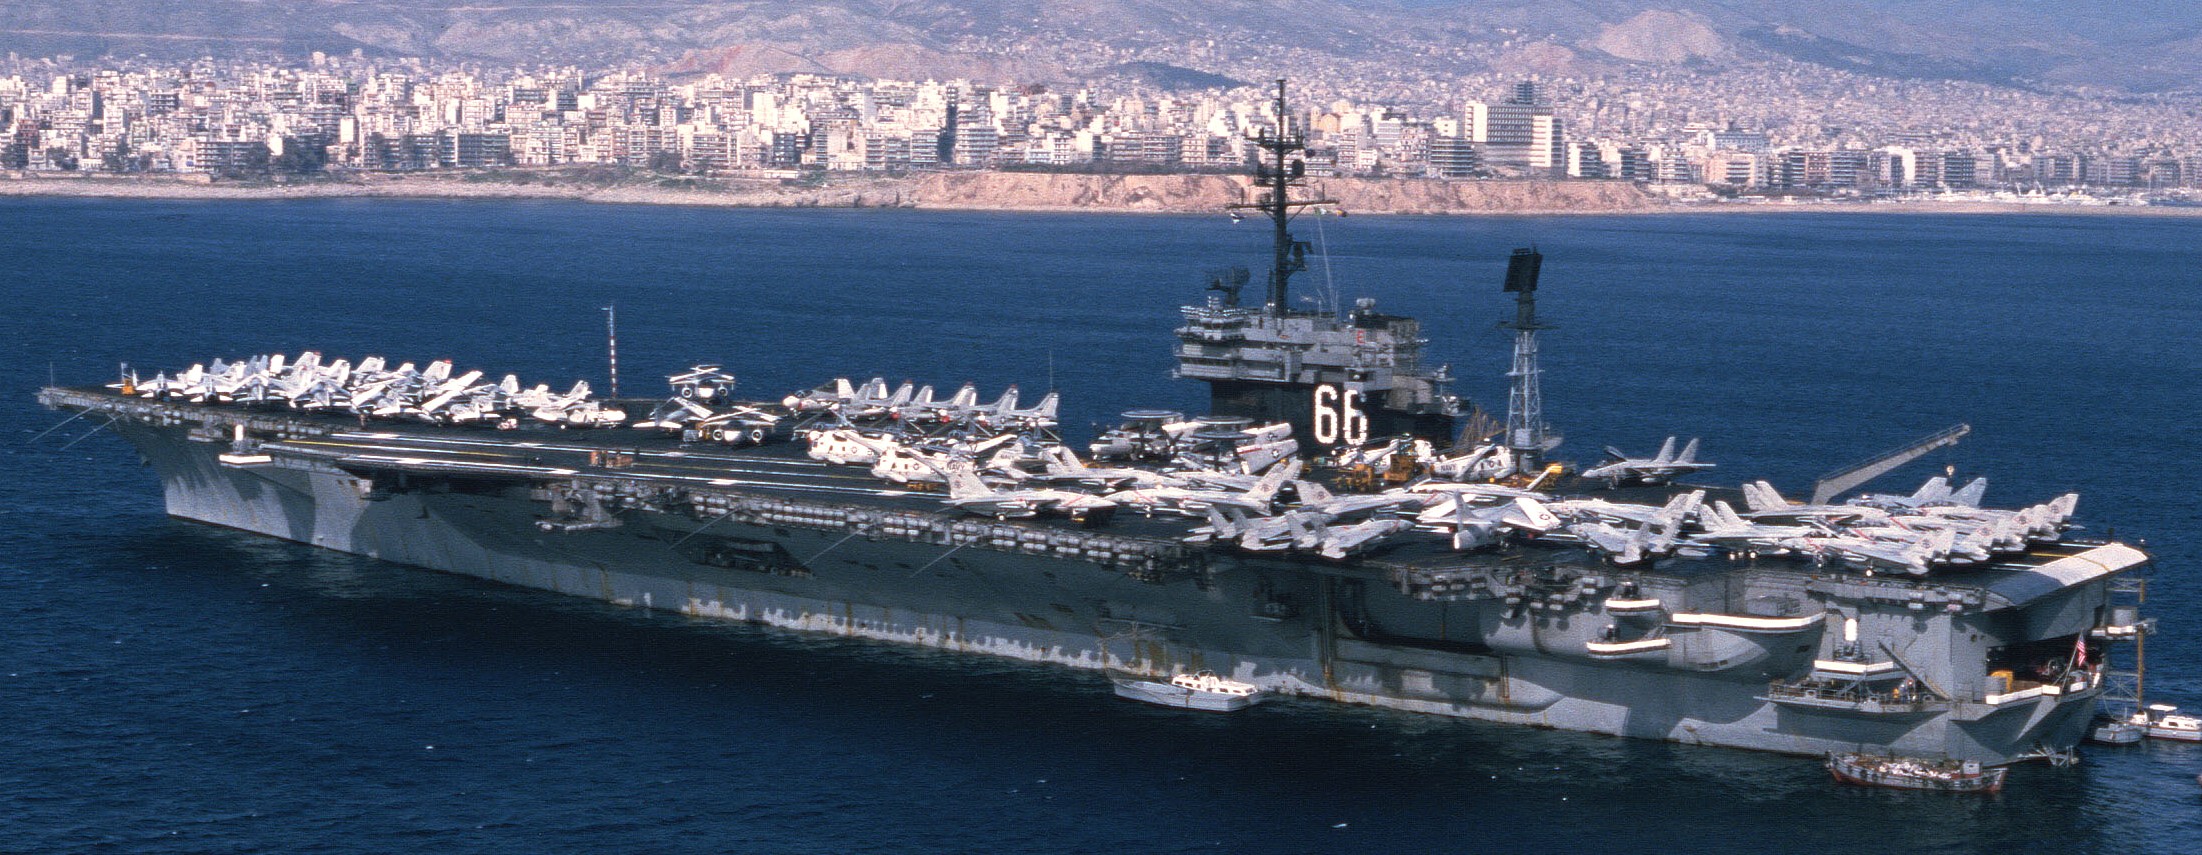 cv-66 uss america kitty hawk class aircraft carrier air wing cvw-11 us navy suez canal 1981 35